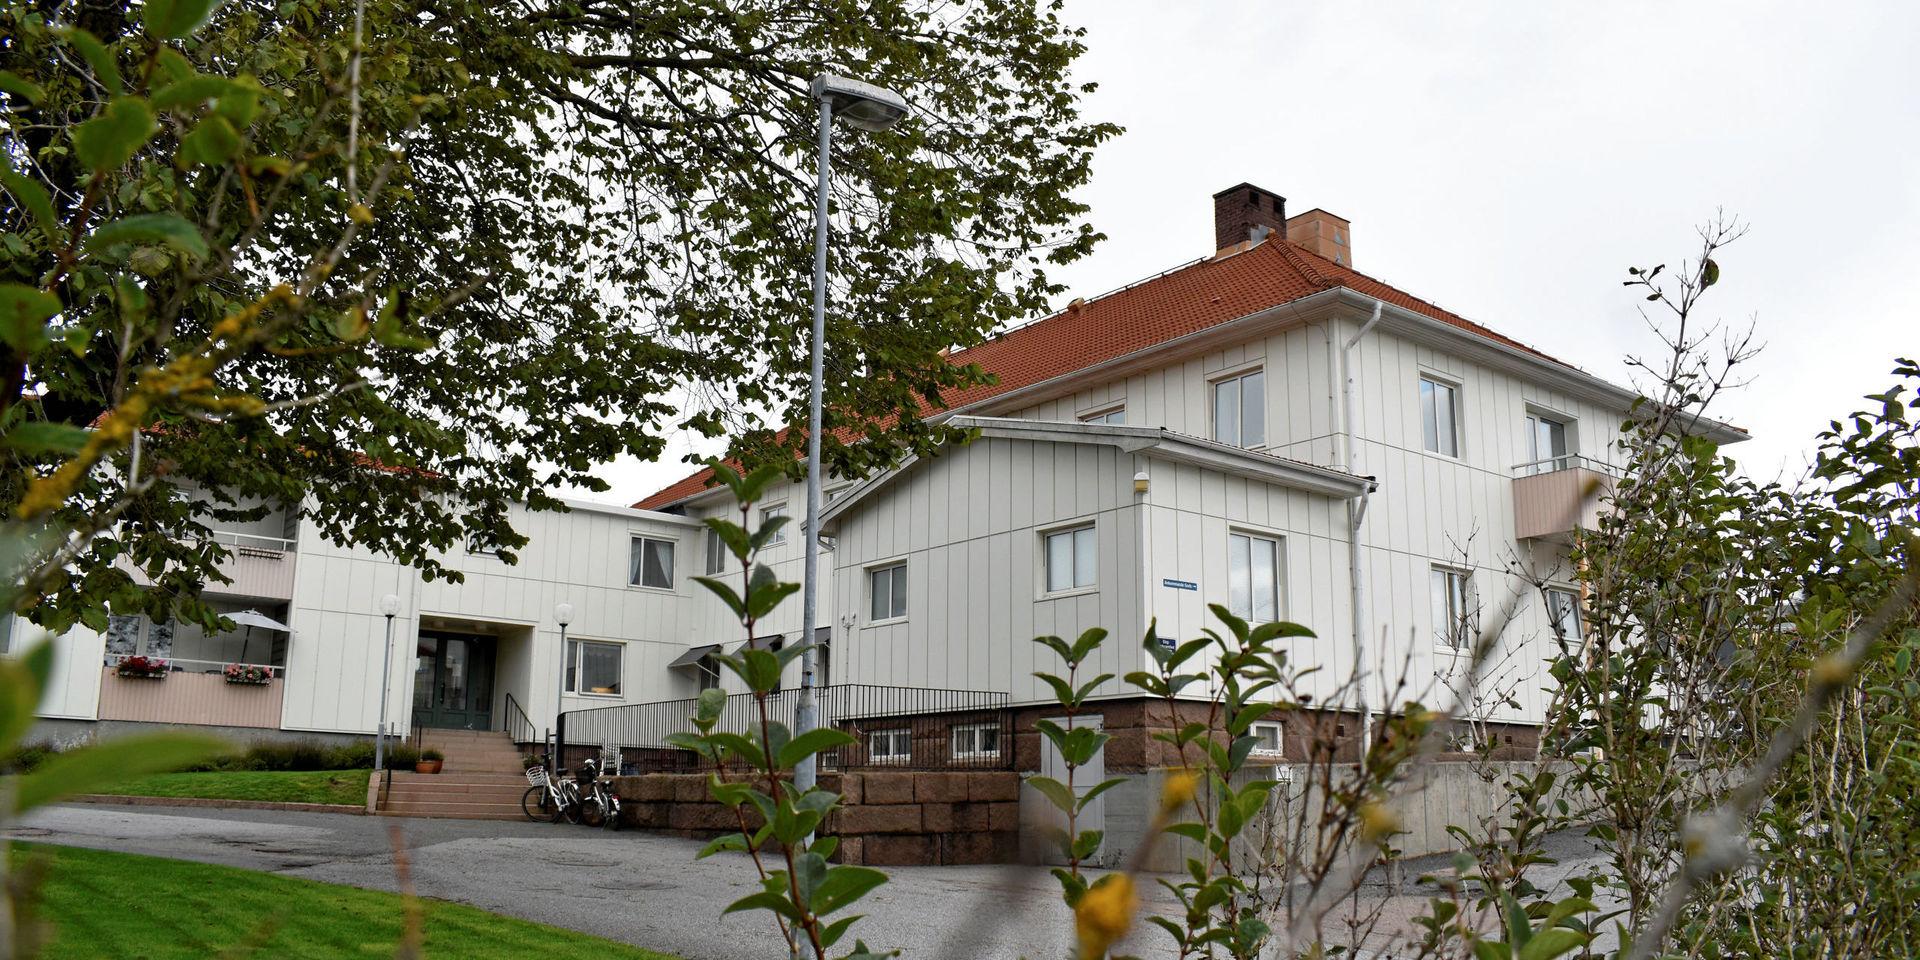 2021 påbörjas ombyggnationen av äldreboendet Lysekilshemmet till hyreslägenheter.